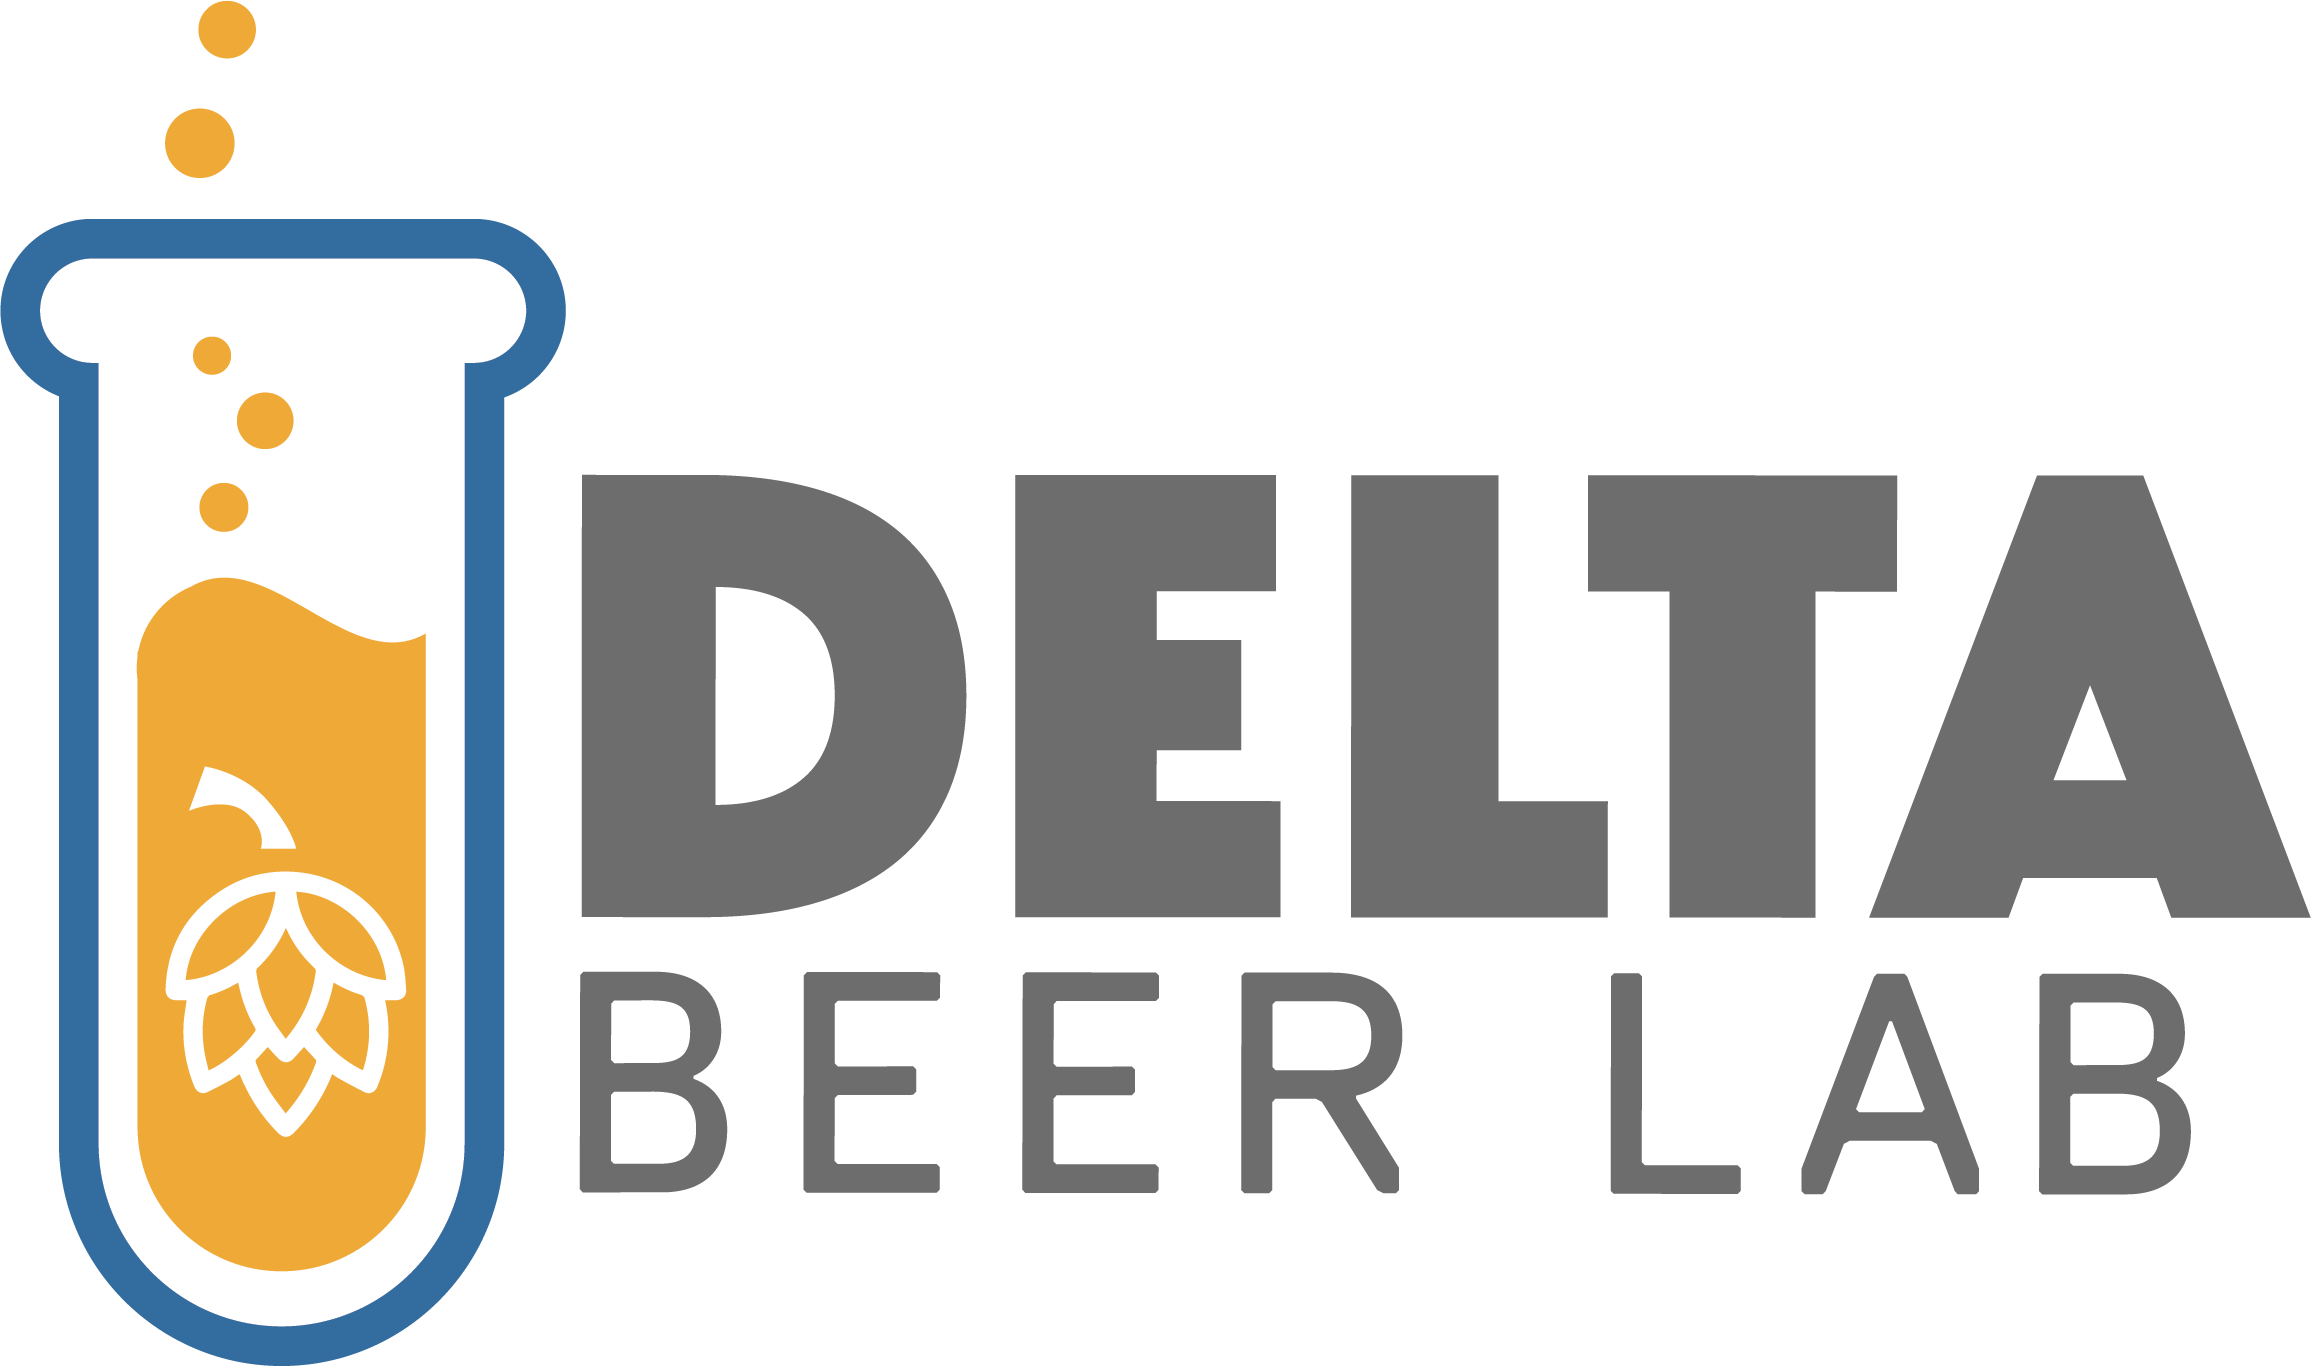 Delta Beer Lab